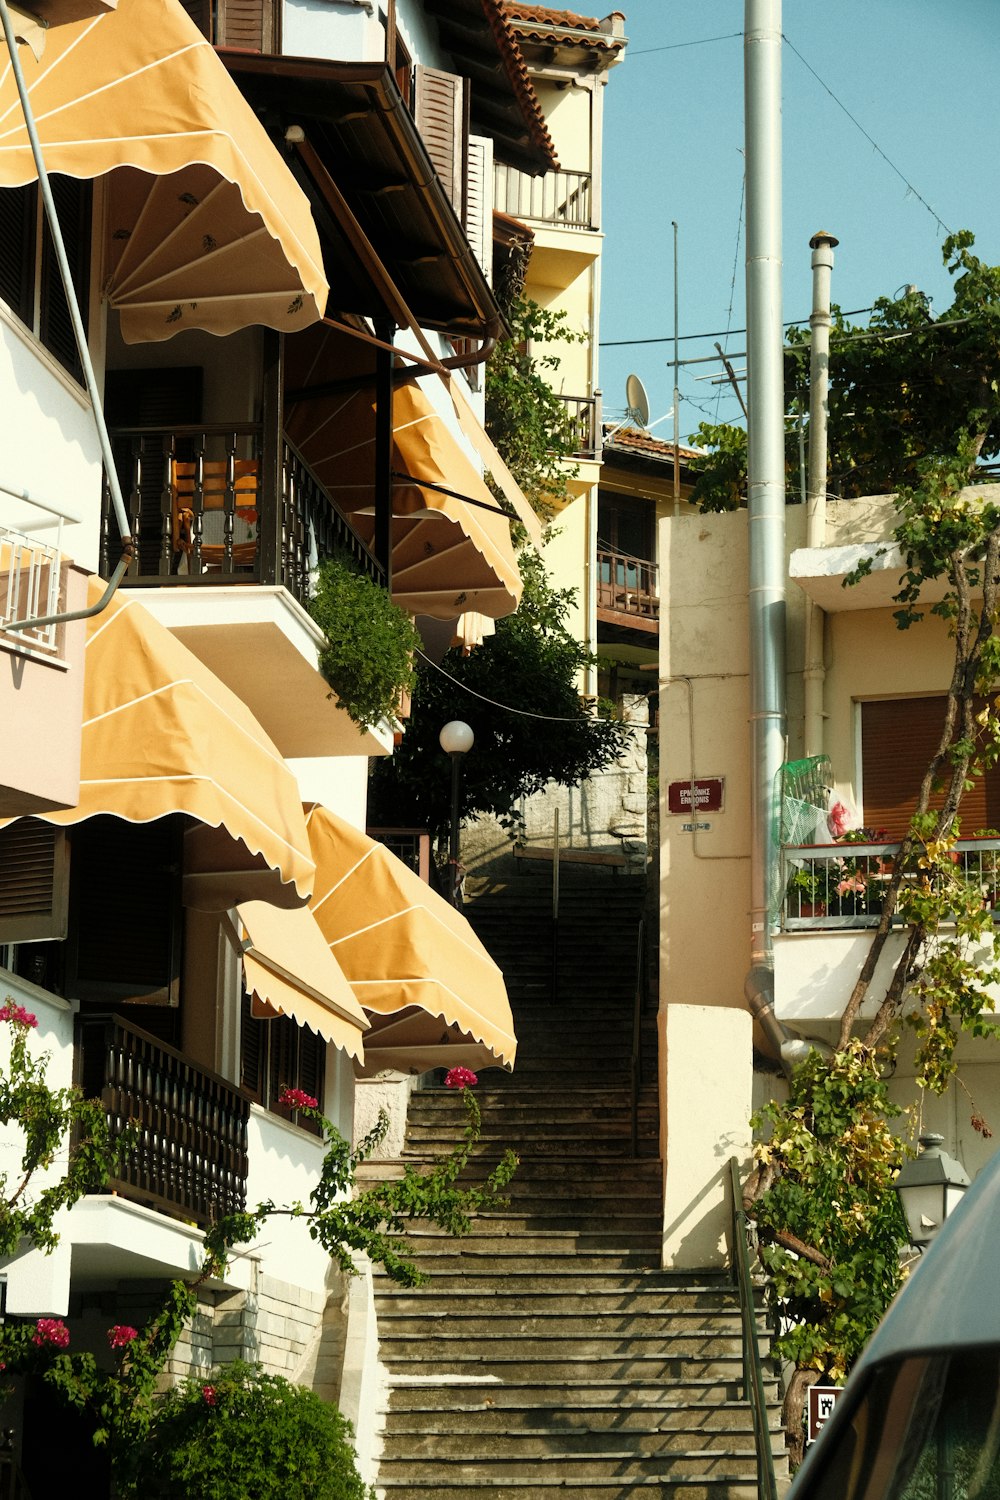 a staircase with umbrellas